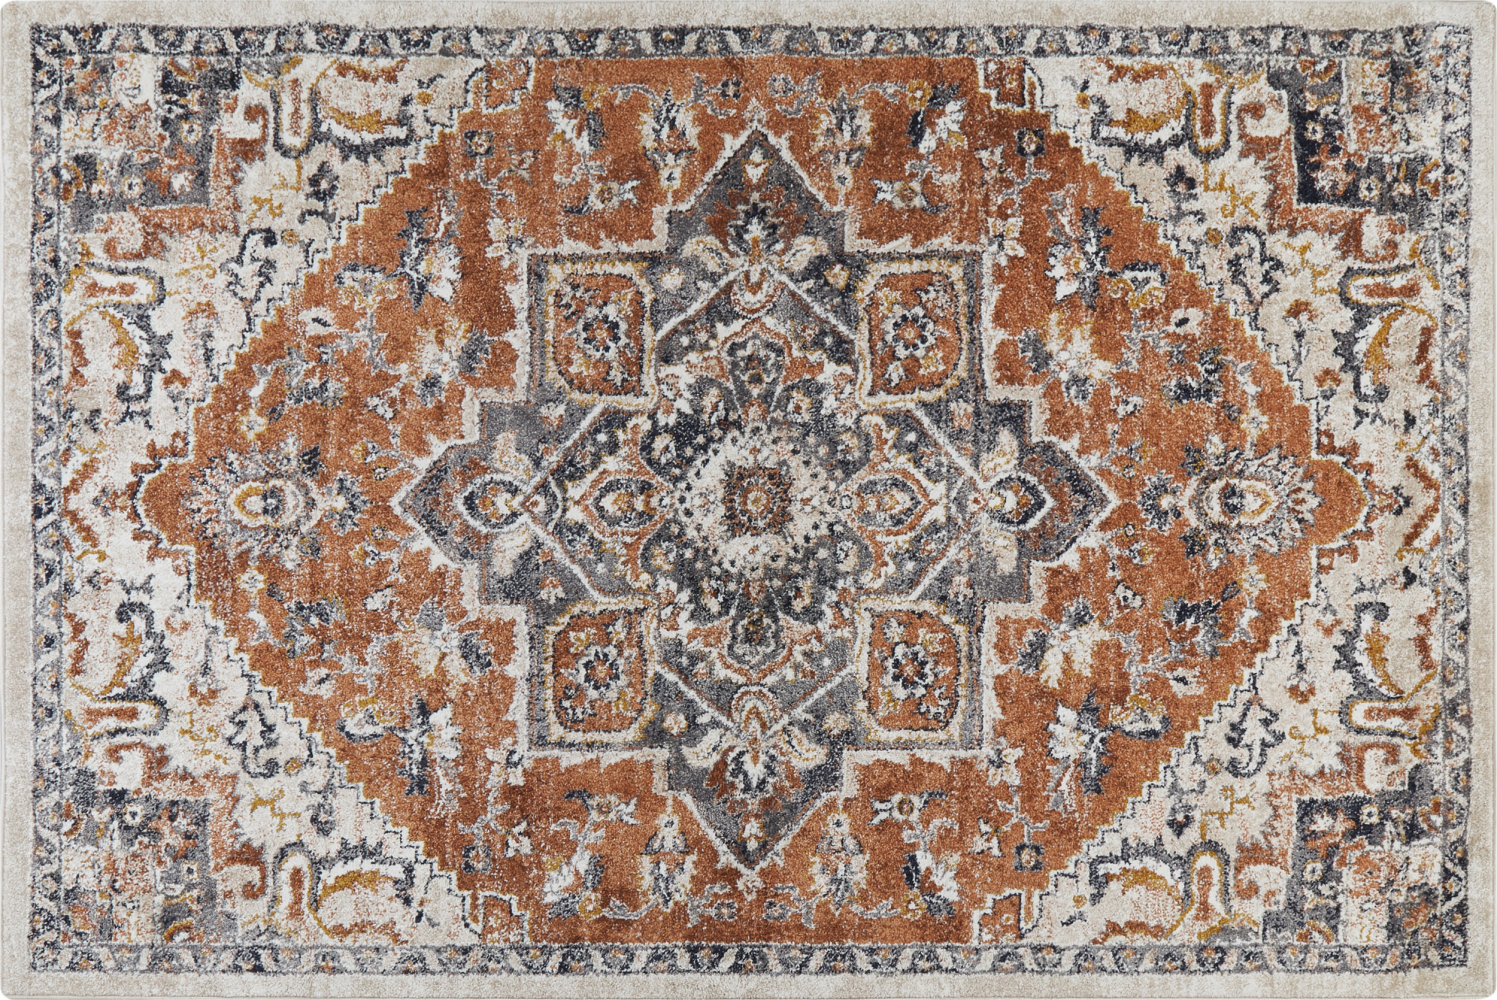 Teppich mehrfarbig 200 x 300 cm orientalisches Muster Kurzflor METSAMOR Bild 1